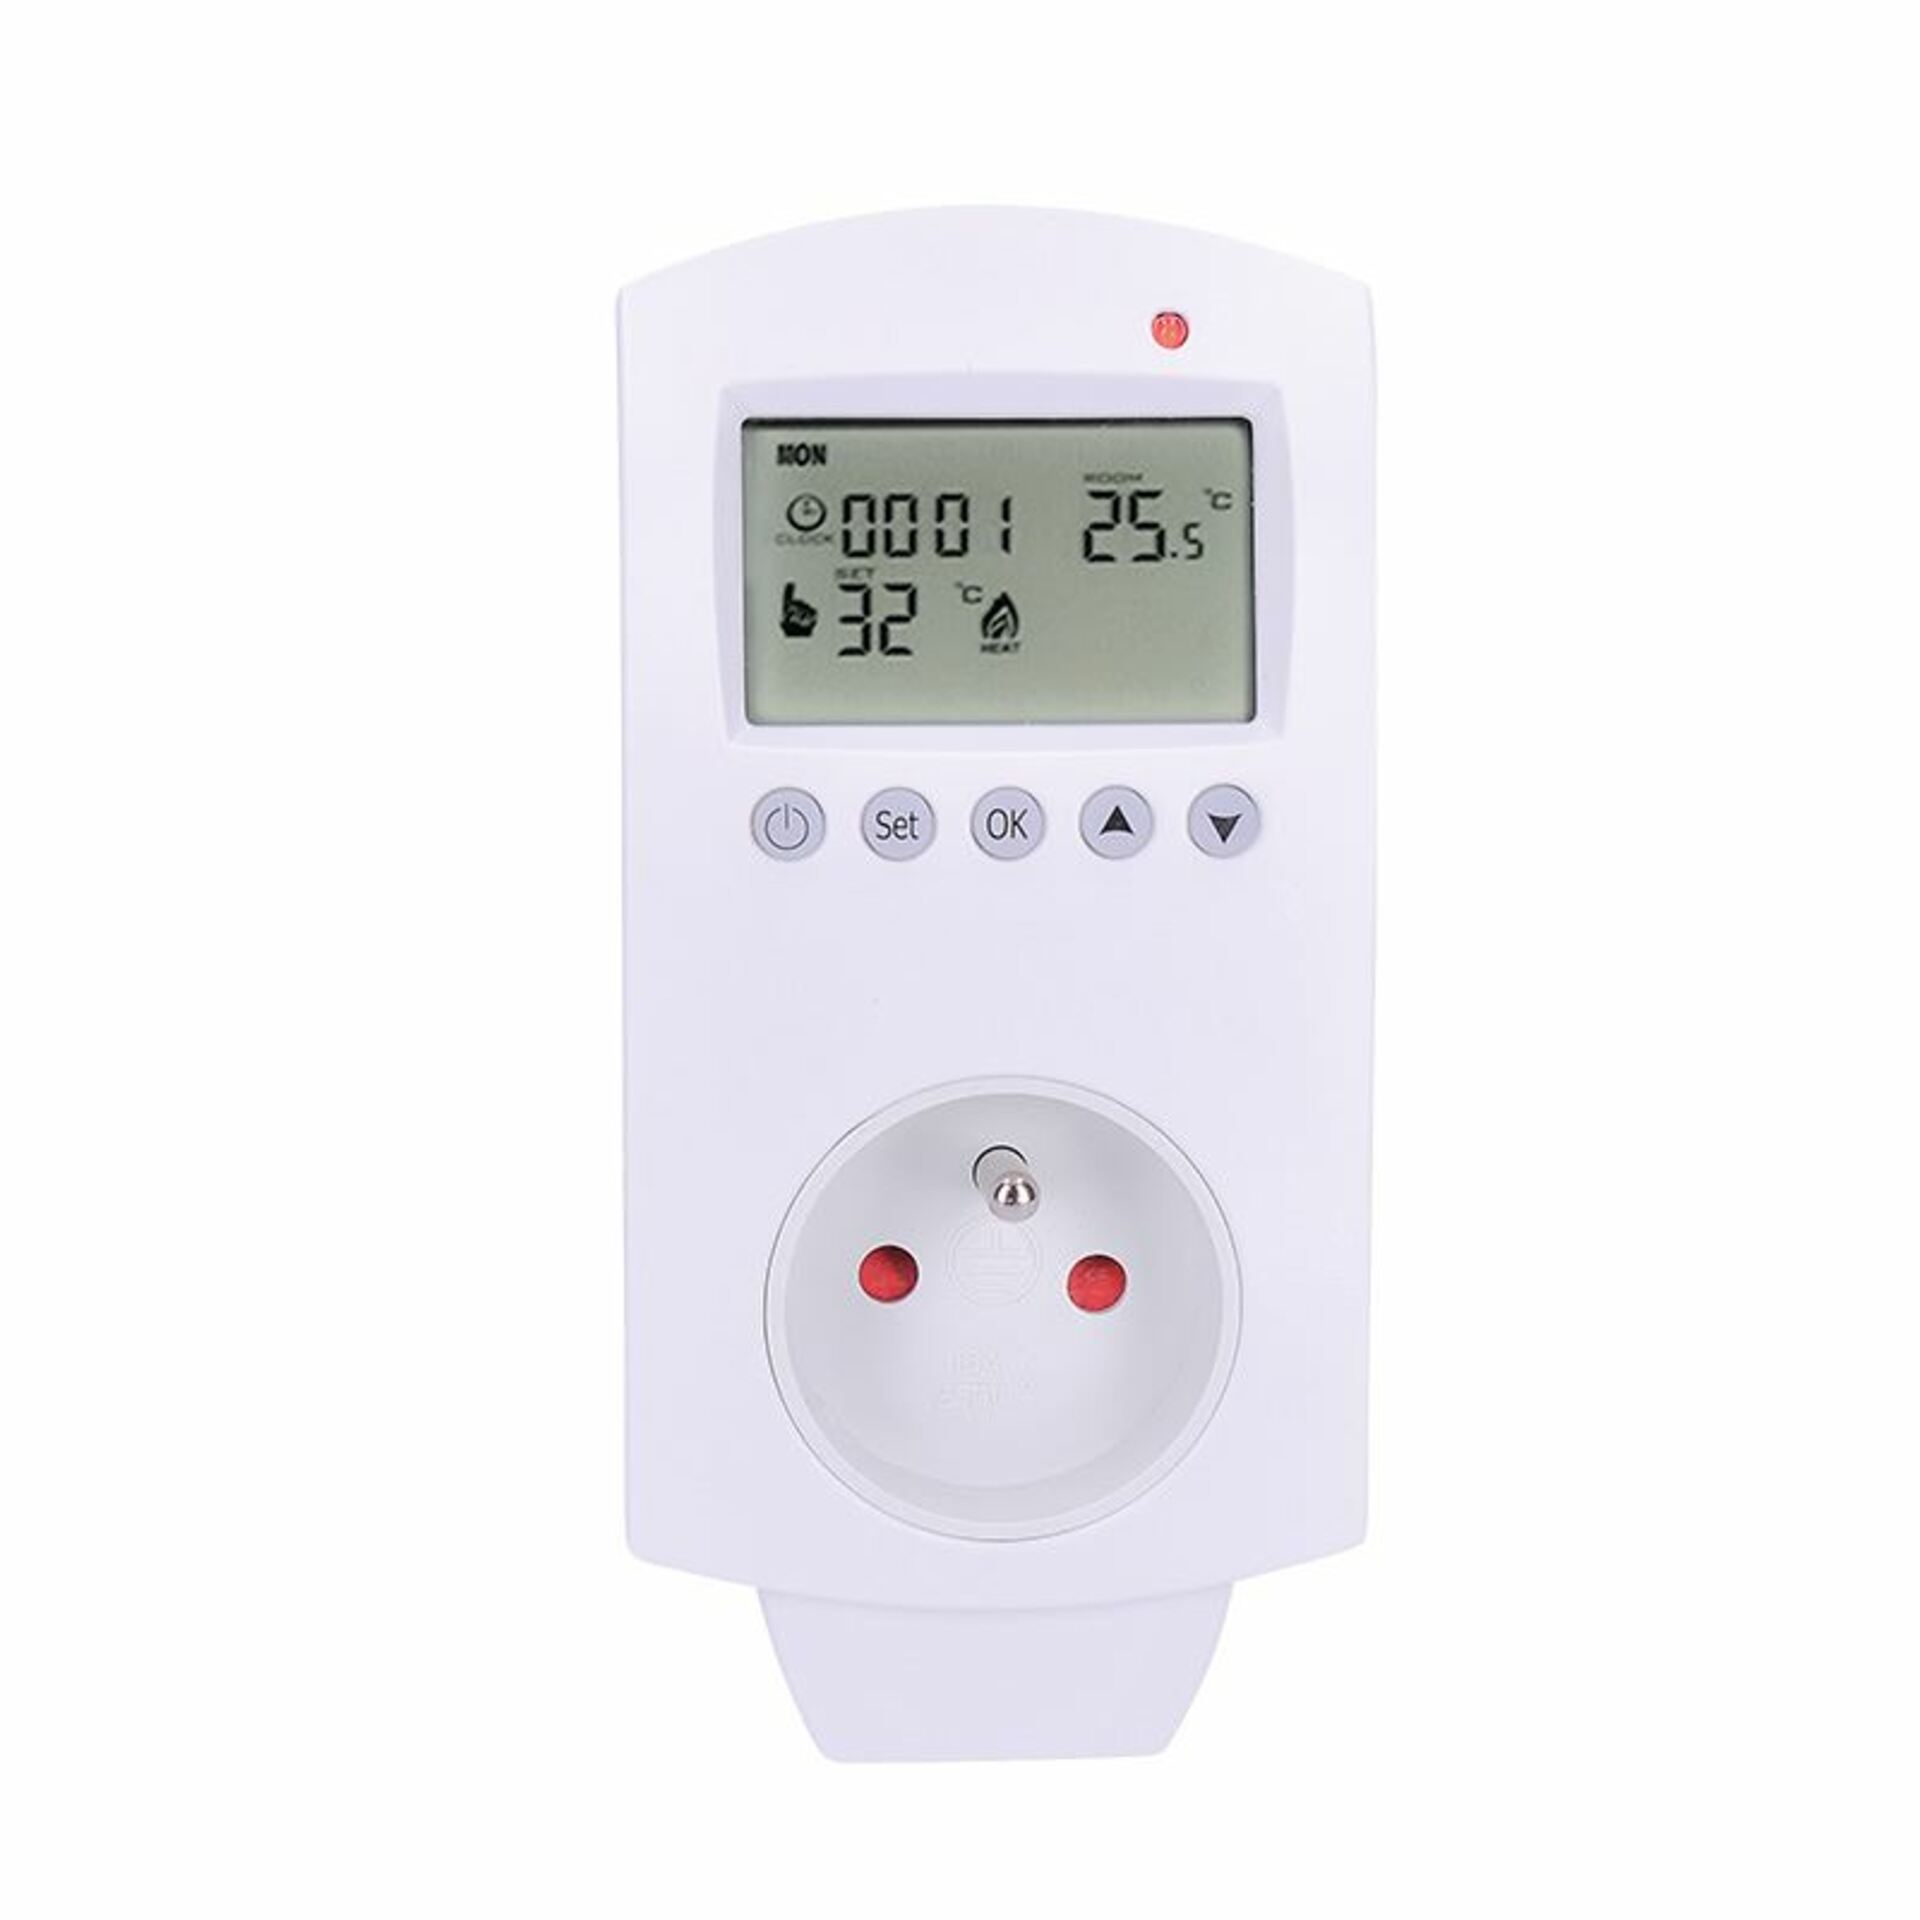 Levně Solight termostaticky spínaná zásuvka, zásuvkový termostat, 230V/16A, režim vytápění nebo chlazení, různé teplotní režimy DT40